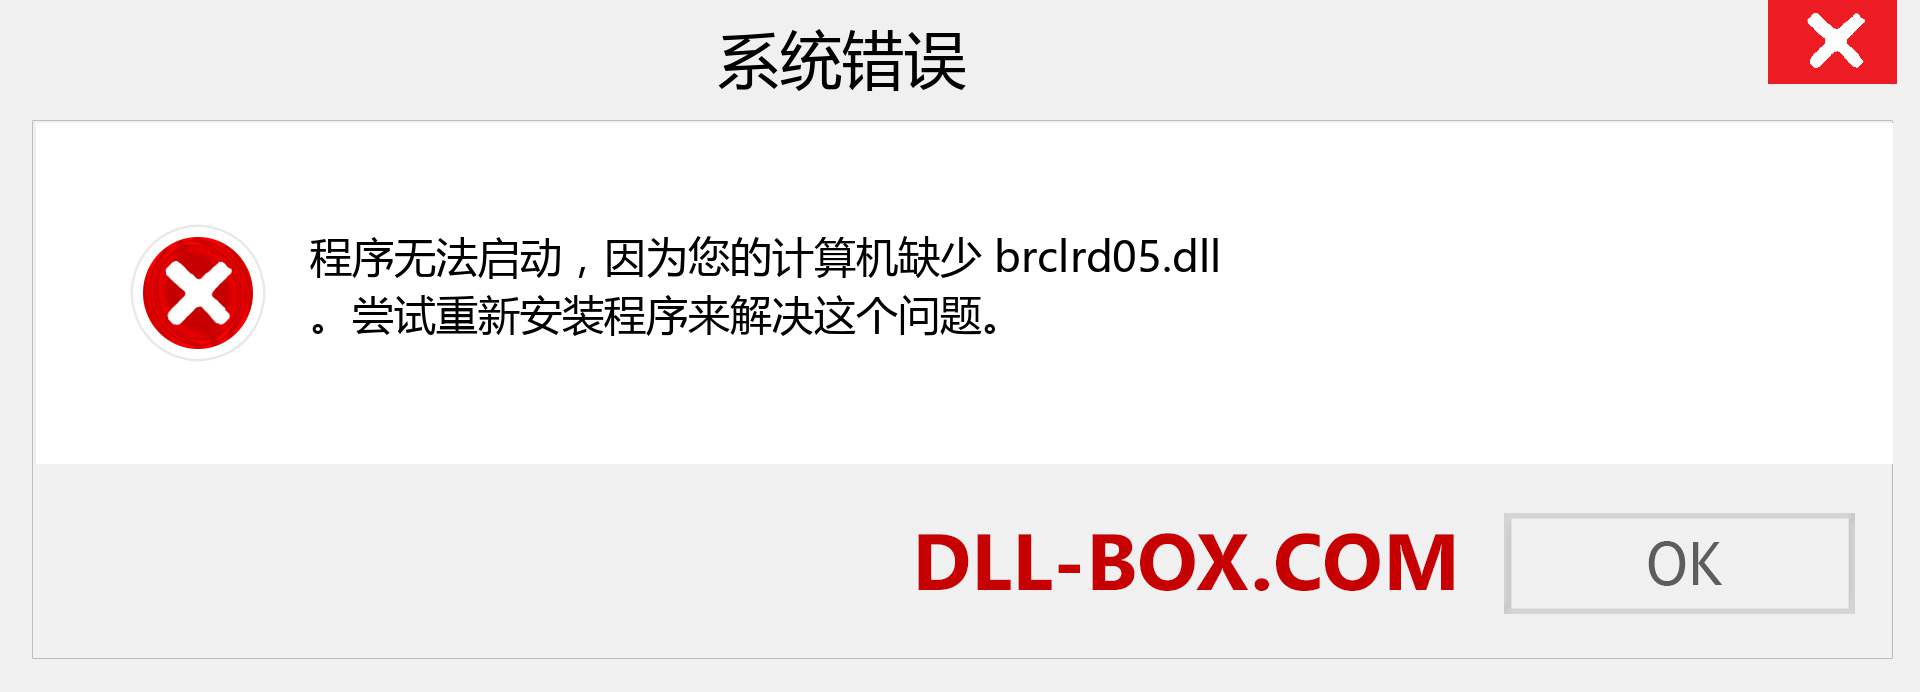 brclrd05.dll 文件丢失？。 适用于 Windows 7、8、10 的下载 - 修复 Windows、照片、图像上的 brclrd05 dll 丢失错误